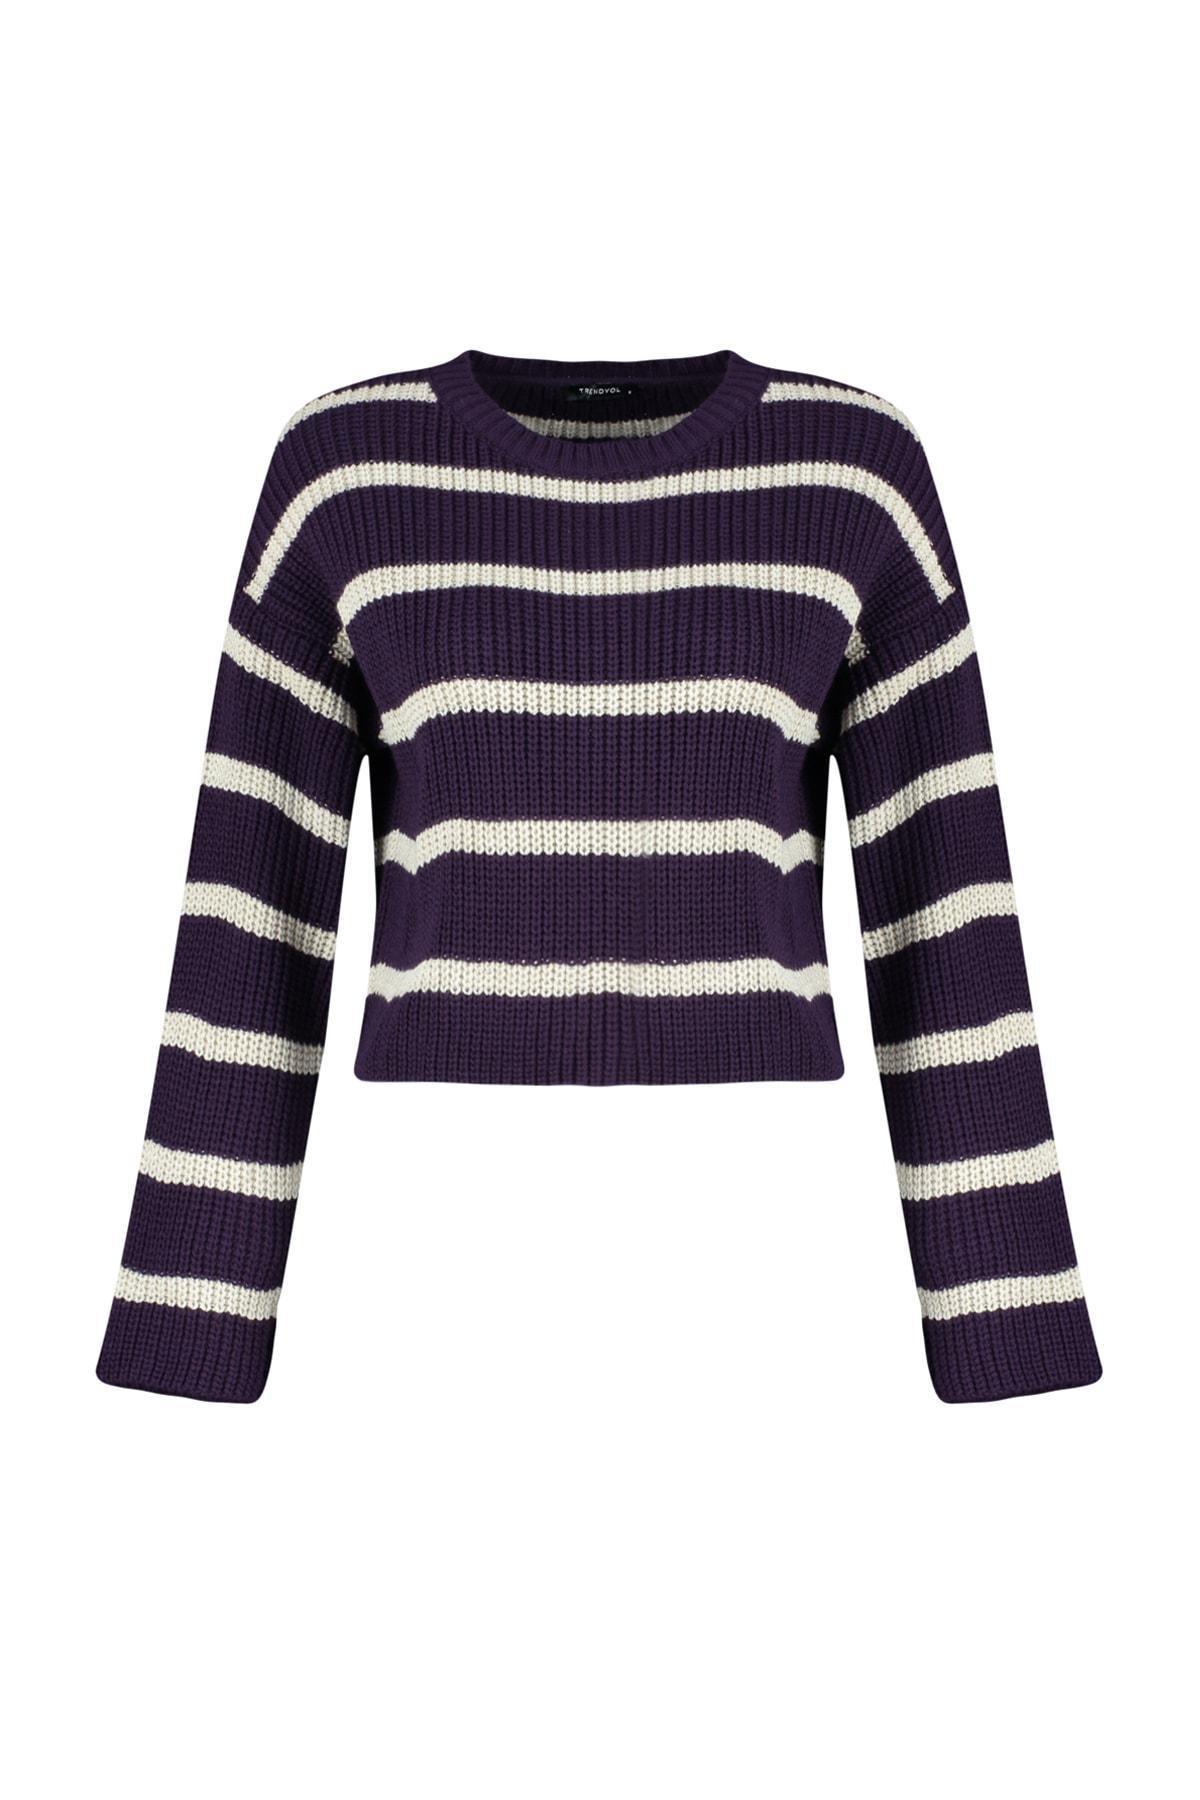 Trendyol - Purple Striped Sweater